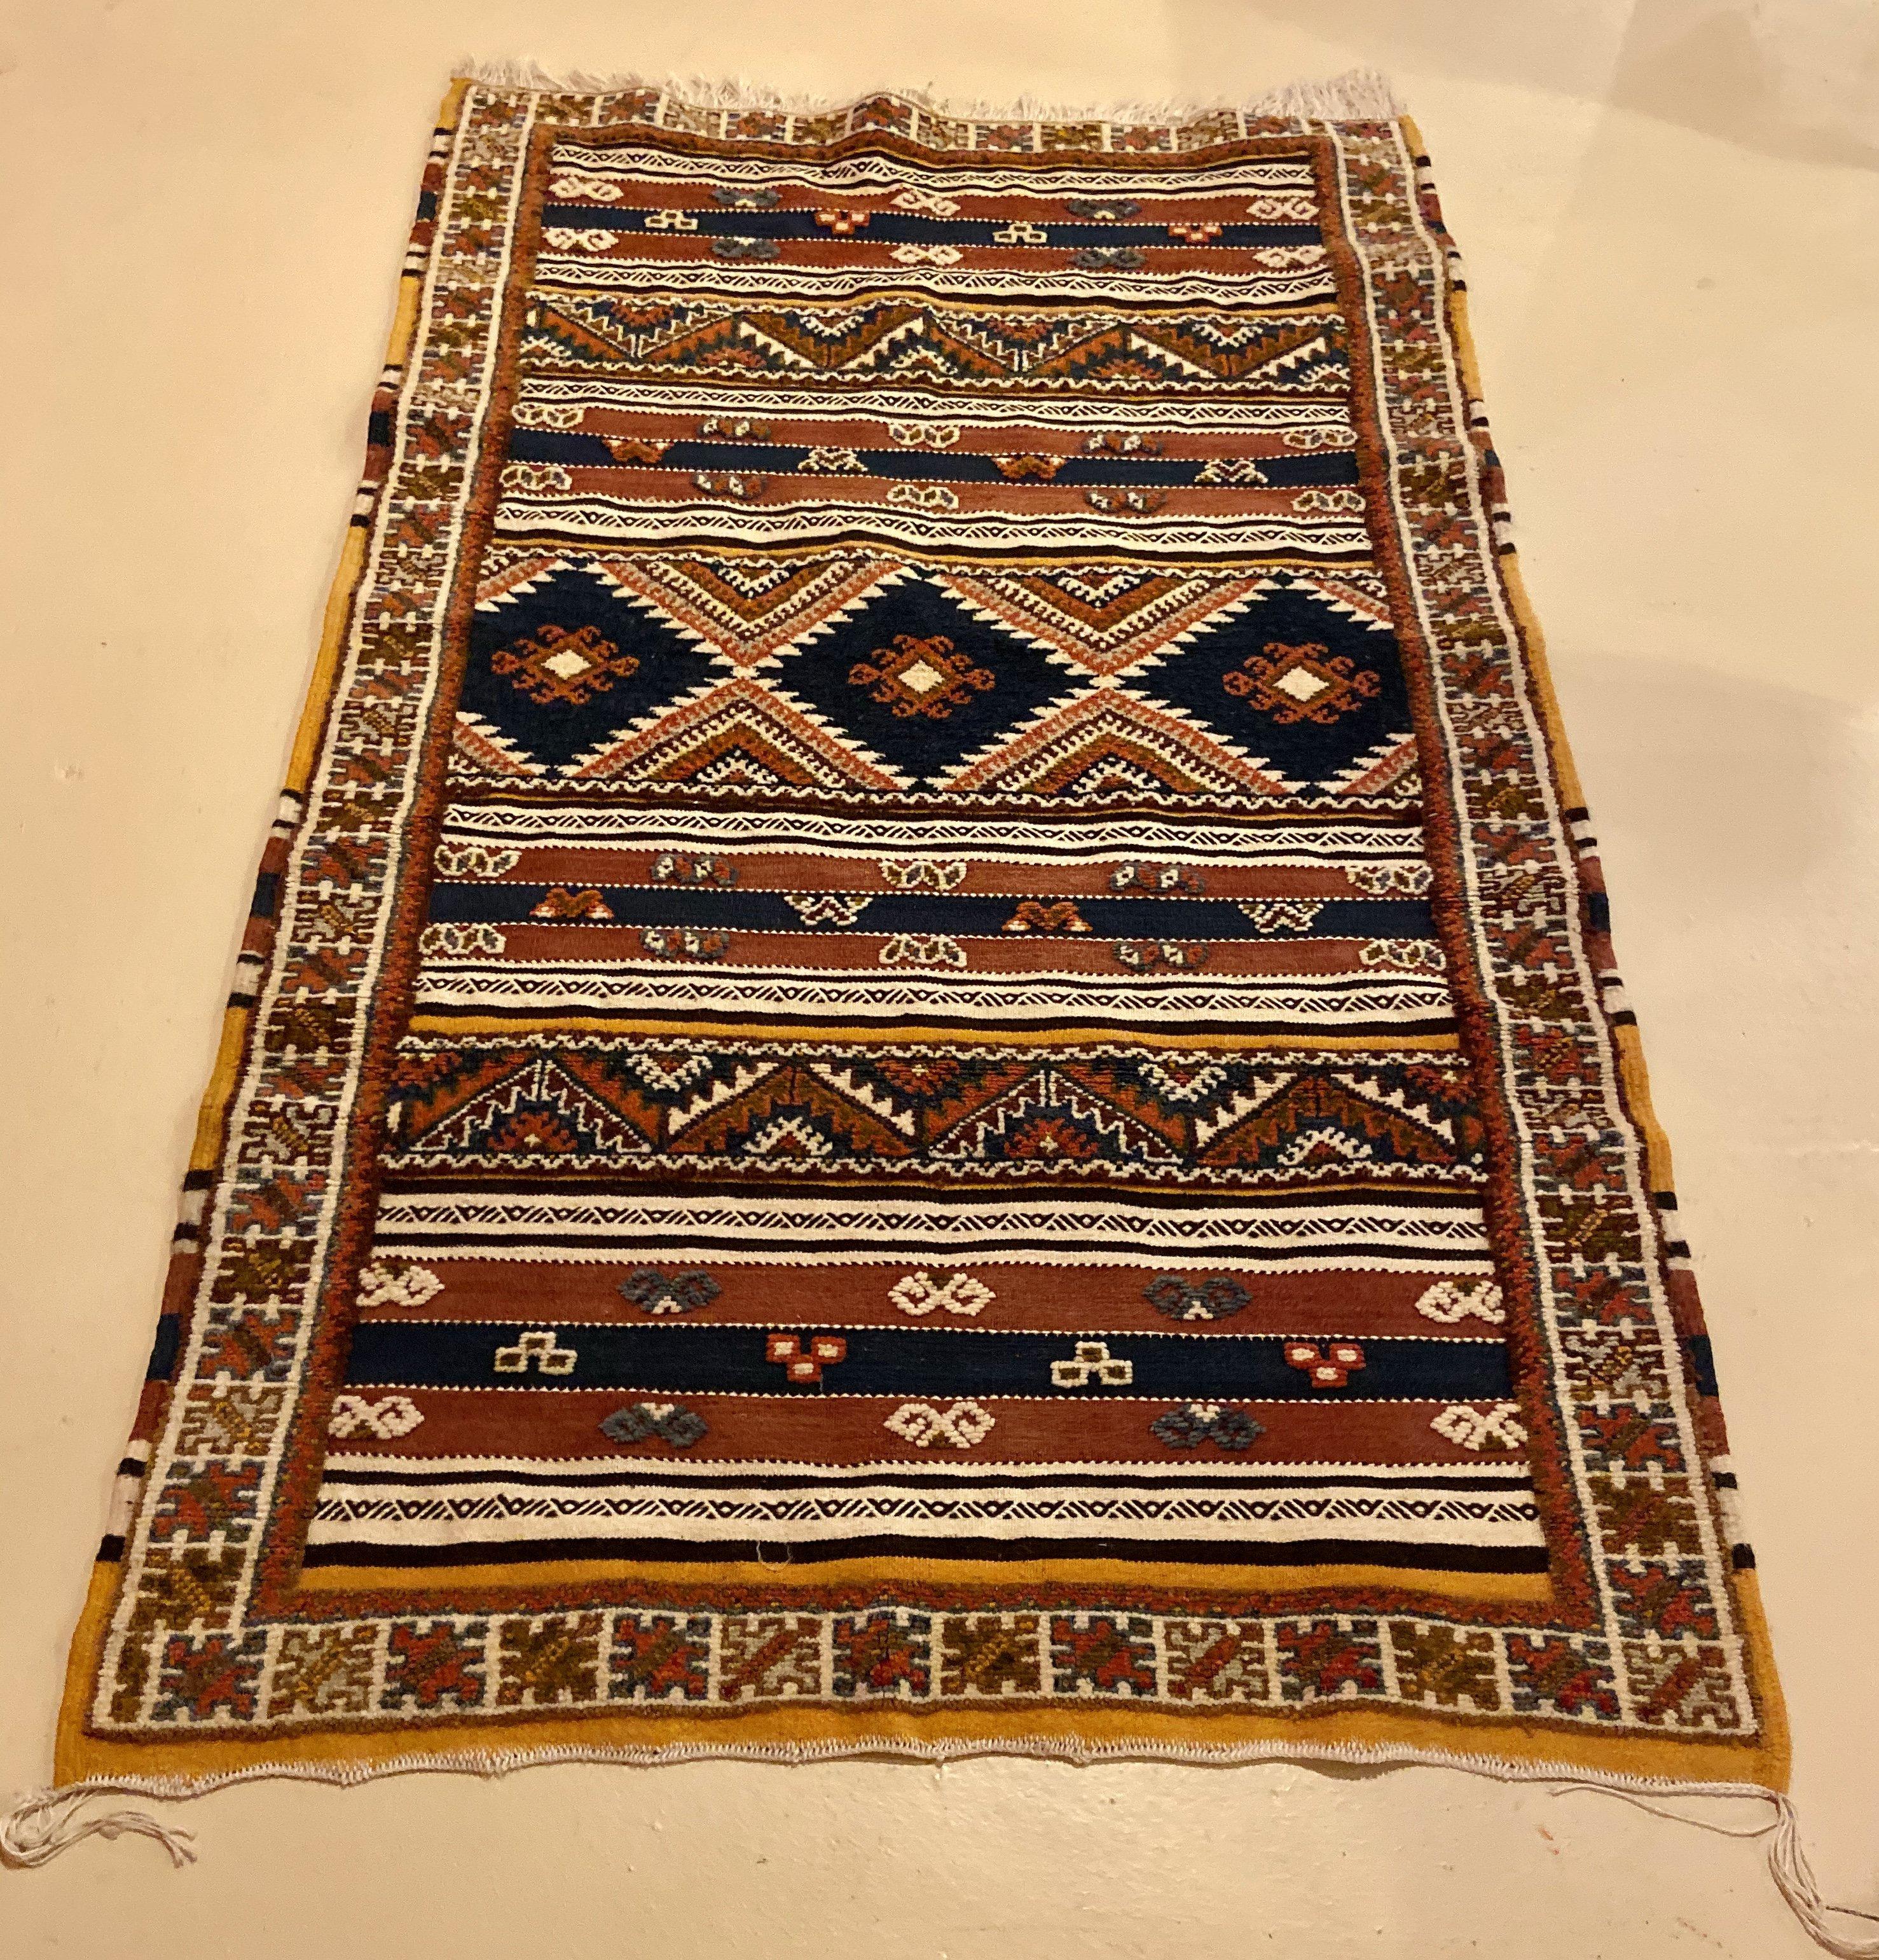 Ce tapis tribal marocain vintage est un ajout étonnant et sophistiqué à votre salon, salle à manger, entrée ou chambre à coucher. Ce tapis et son motif exquis et captivant ne se démoderont jamais. Ce tapis est tissé à la main dans la région de